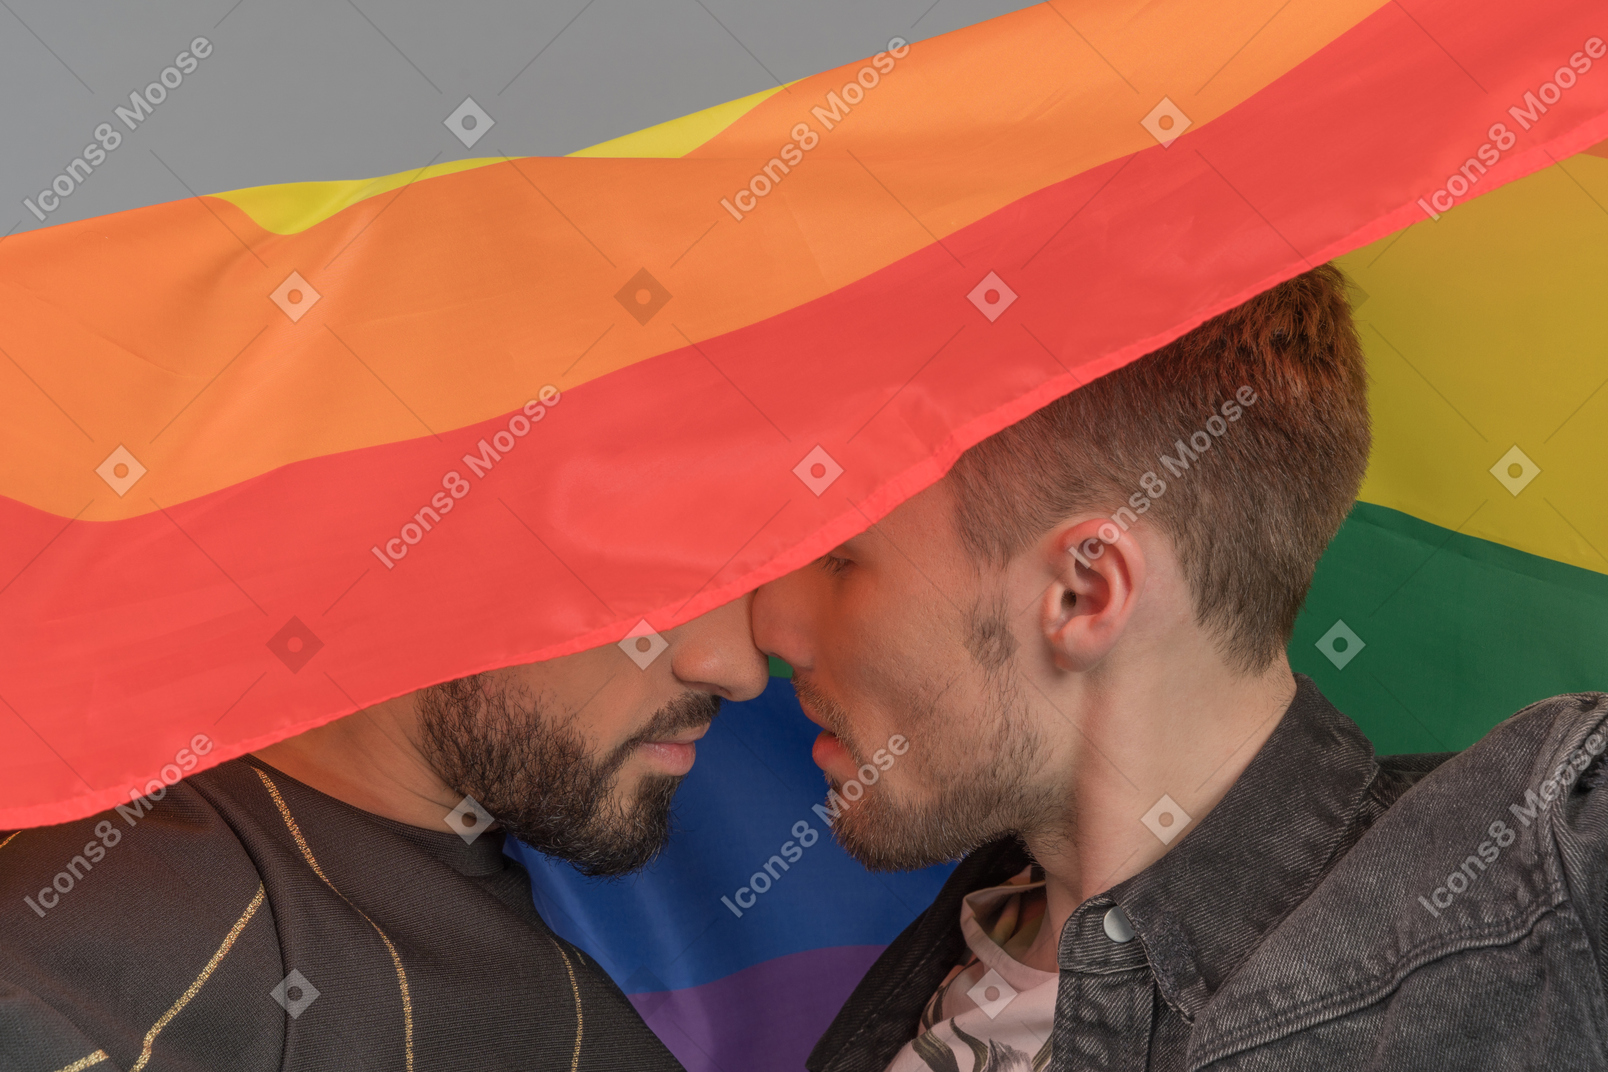 Lgbtの旗の下で鼻に密接に触れている2人の若い男性のクローズアップ